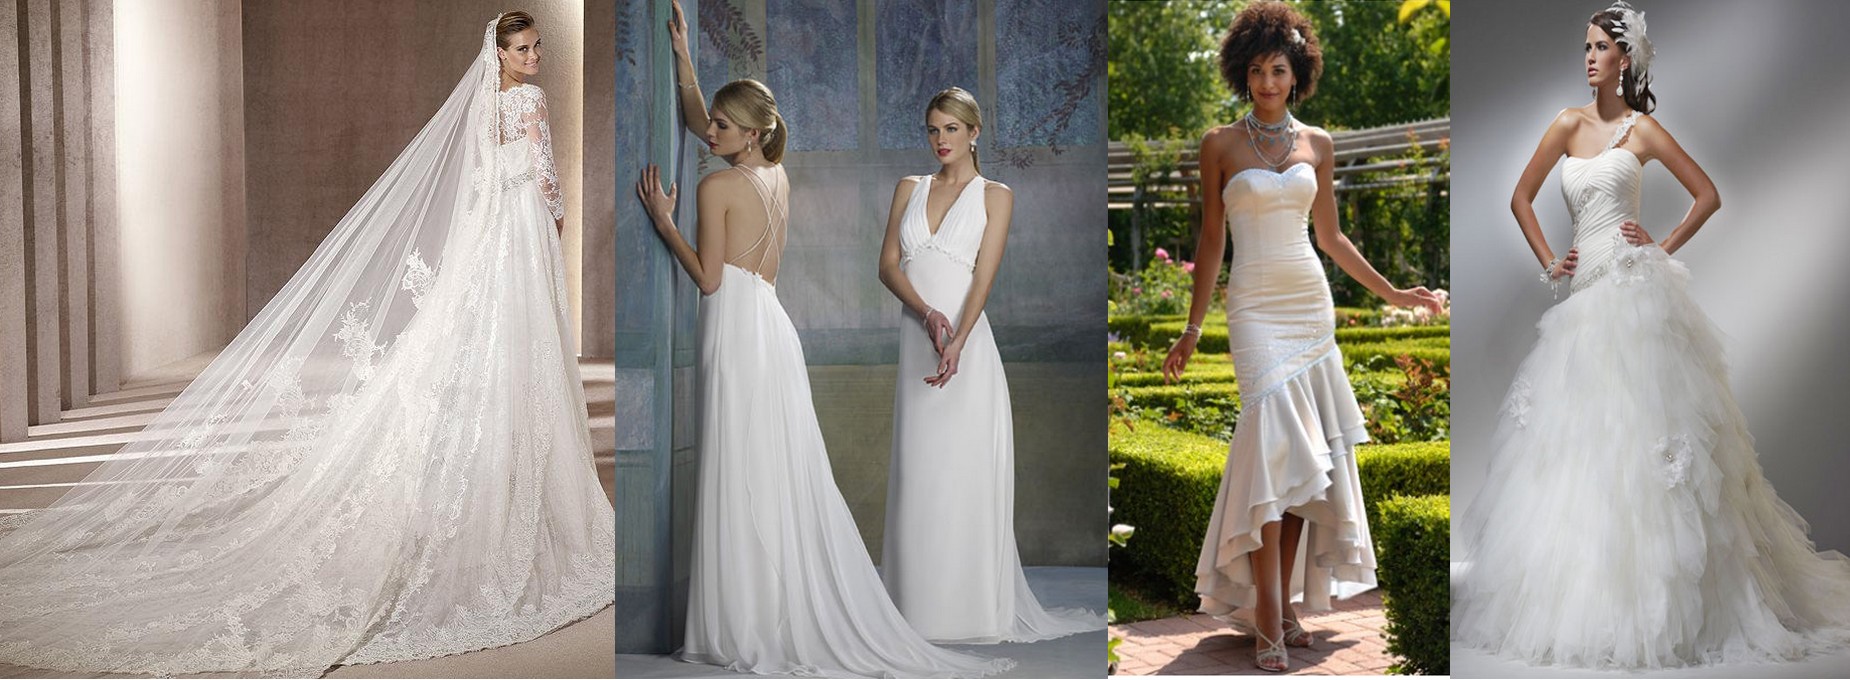 Cette année, quelle robe de mariée est la plus populaire? Que préfèrent les filles le plus? Ici, dans Boutique 1robe en ligne, nous vous révélons tous ces secrets. Vous trouverez les robes les plus belles. 